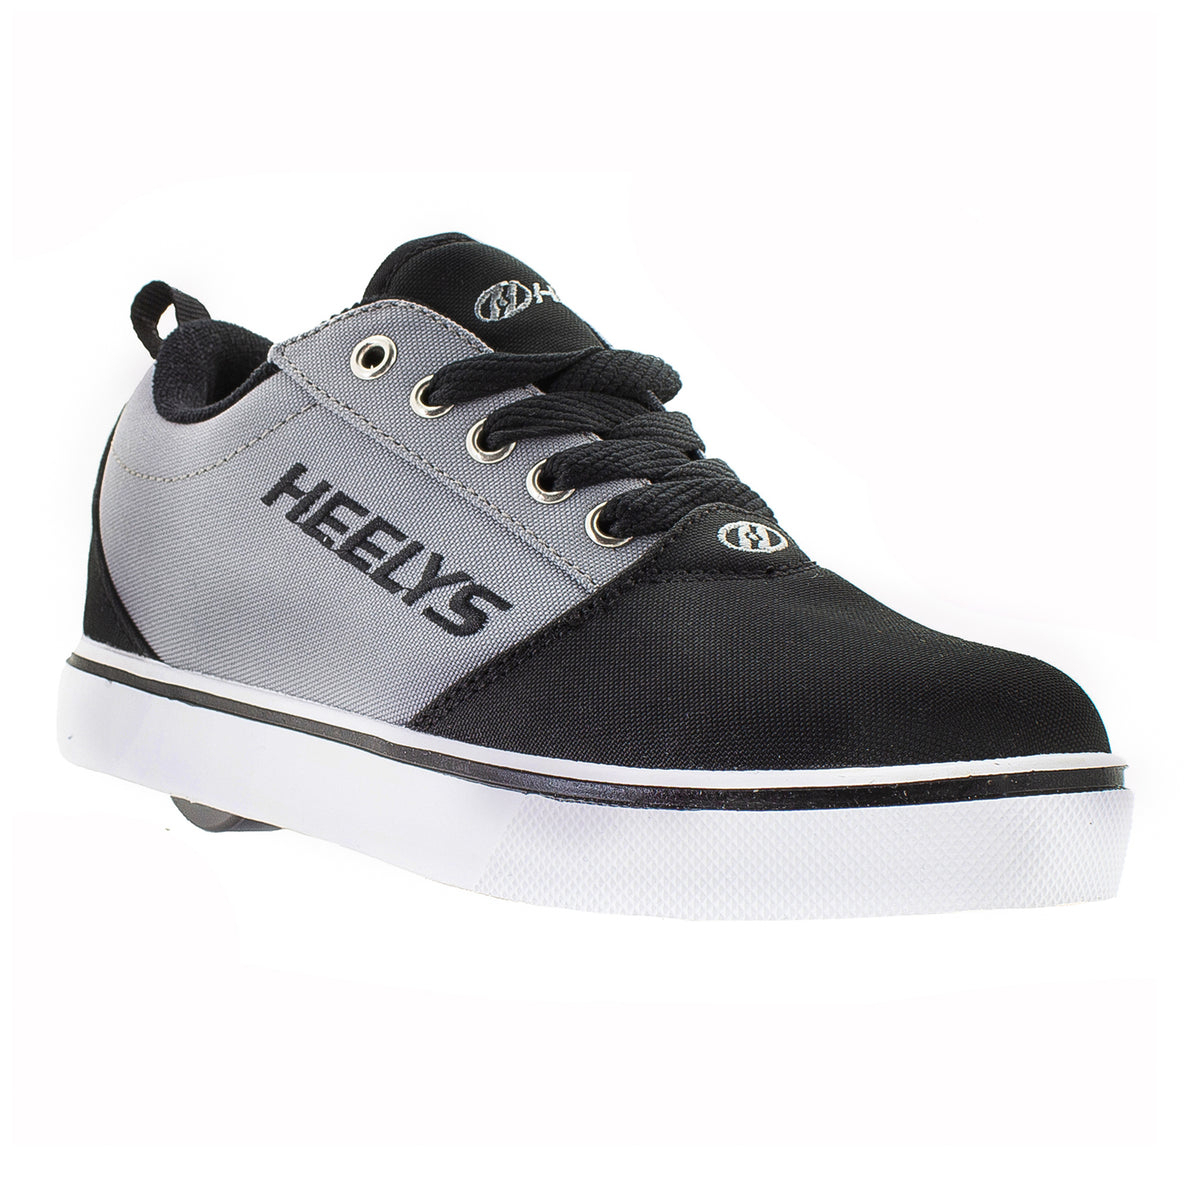 HEELYS Unisex Kids' Pro 20 Wheeled Shoe Black/Grey - HE100761H BLACK/ GREY - BLACK/ GREY, 4 M US Big Kid